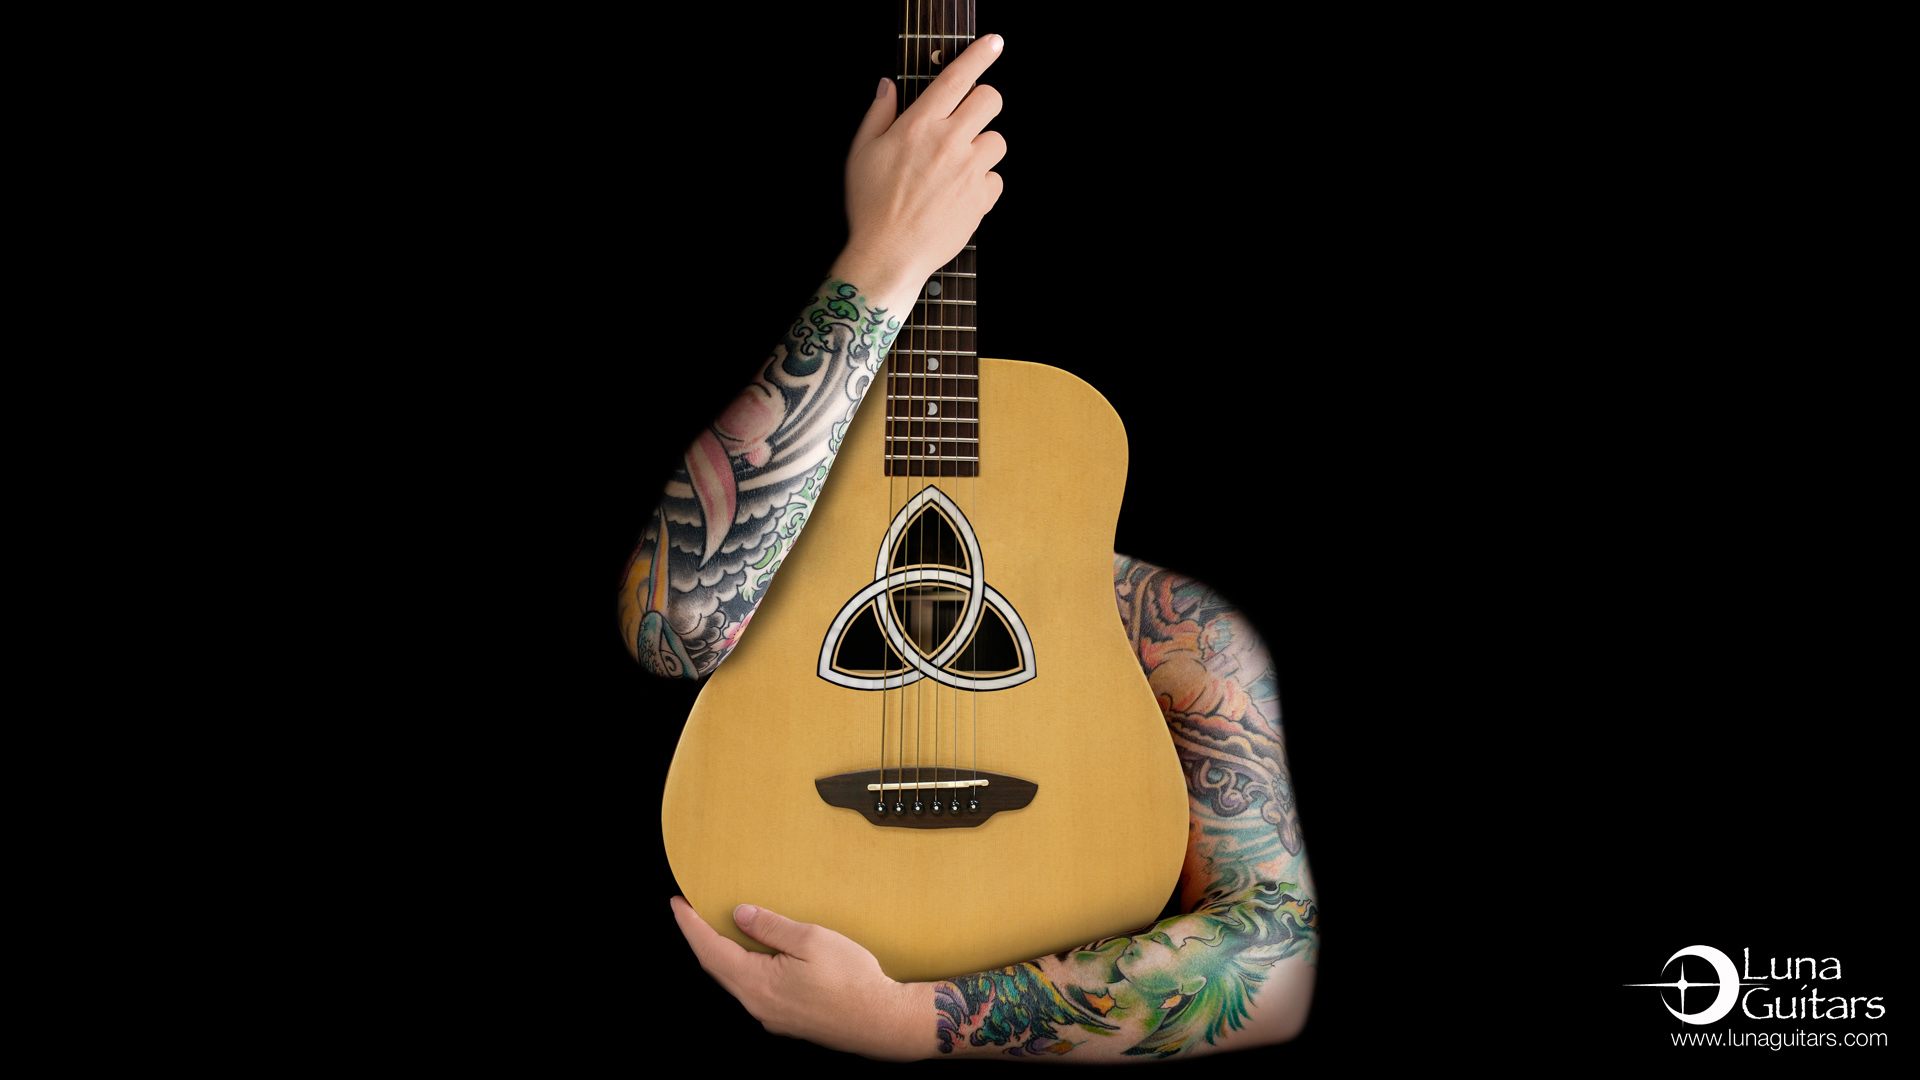 voorkoms rock music guitar body temporary tattoo - Price in India, Buy  voorkoms rock music guitar body temporary tattoo Online In India, Reviews,  Ratings & Features | Flipkart.com